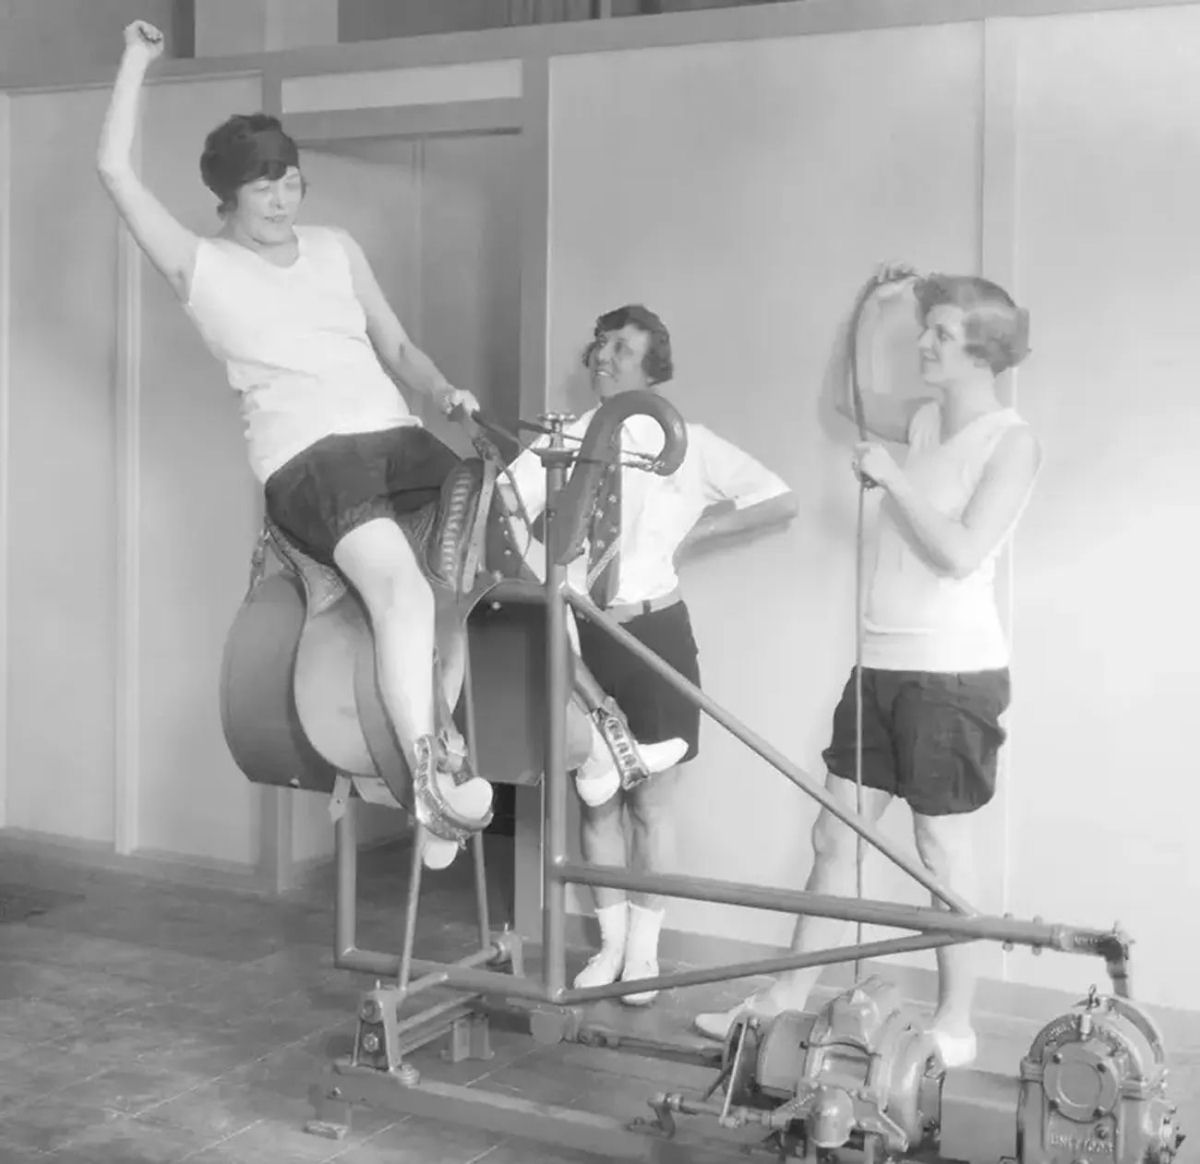 Fotos de máquinas de exercícios bizarras do passado 13